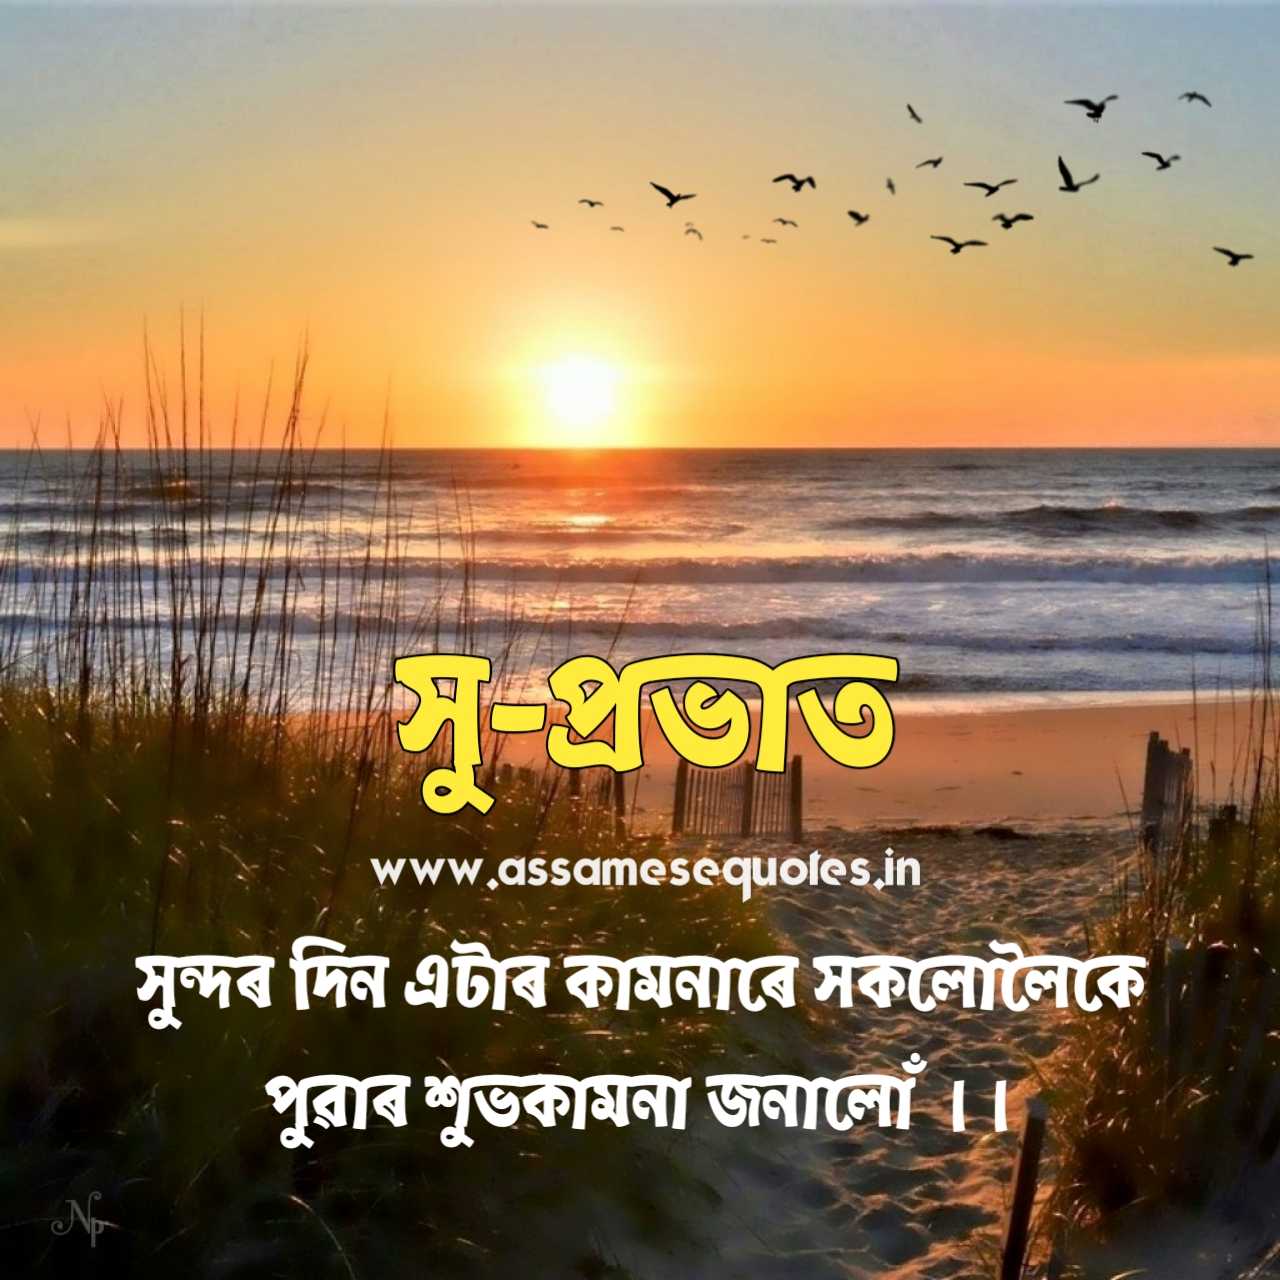 Assamese good morning wish image download